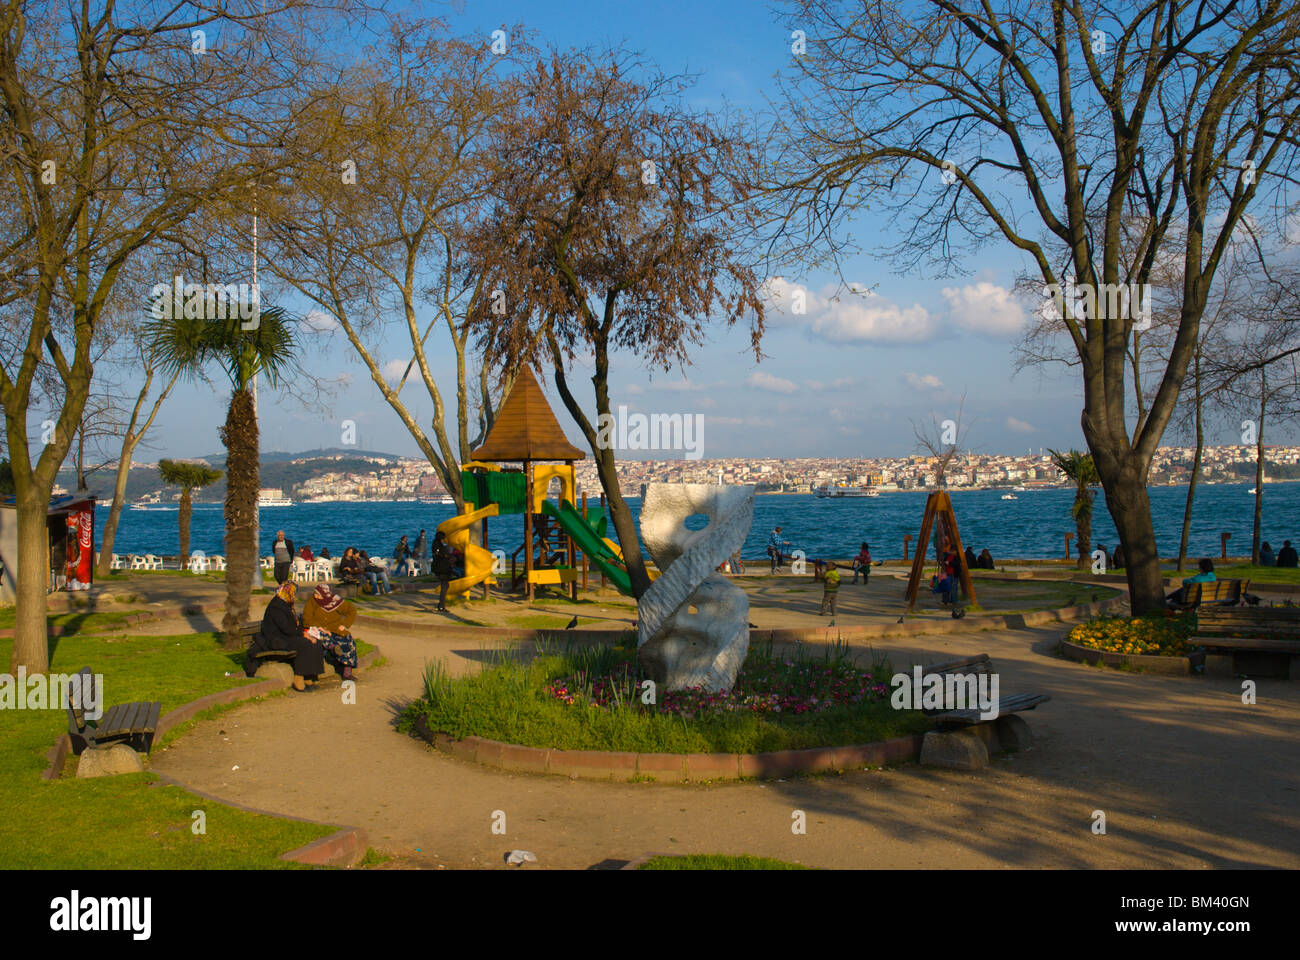 Findikli parki park Beyoglu district Istanbul Turkey Europe Stock Photo -  Alamy